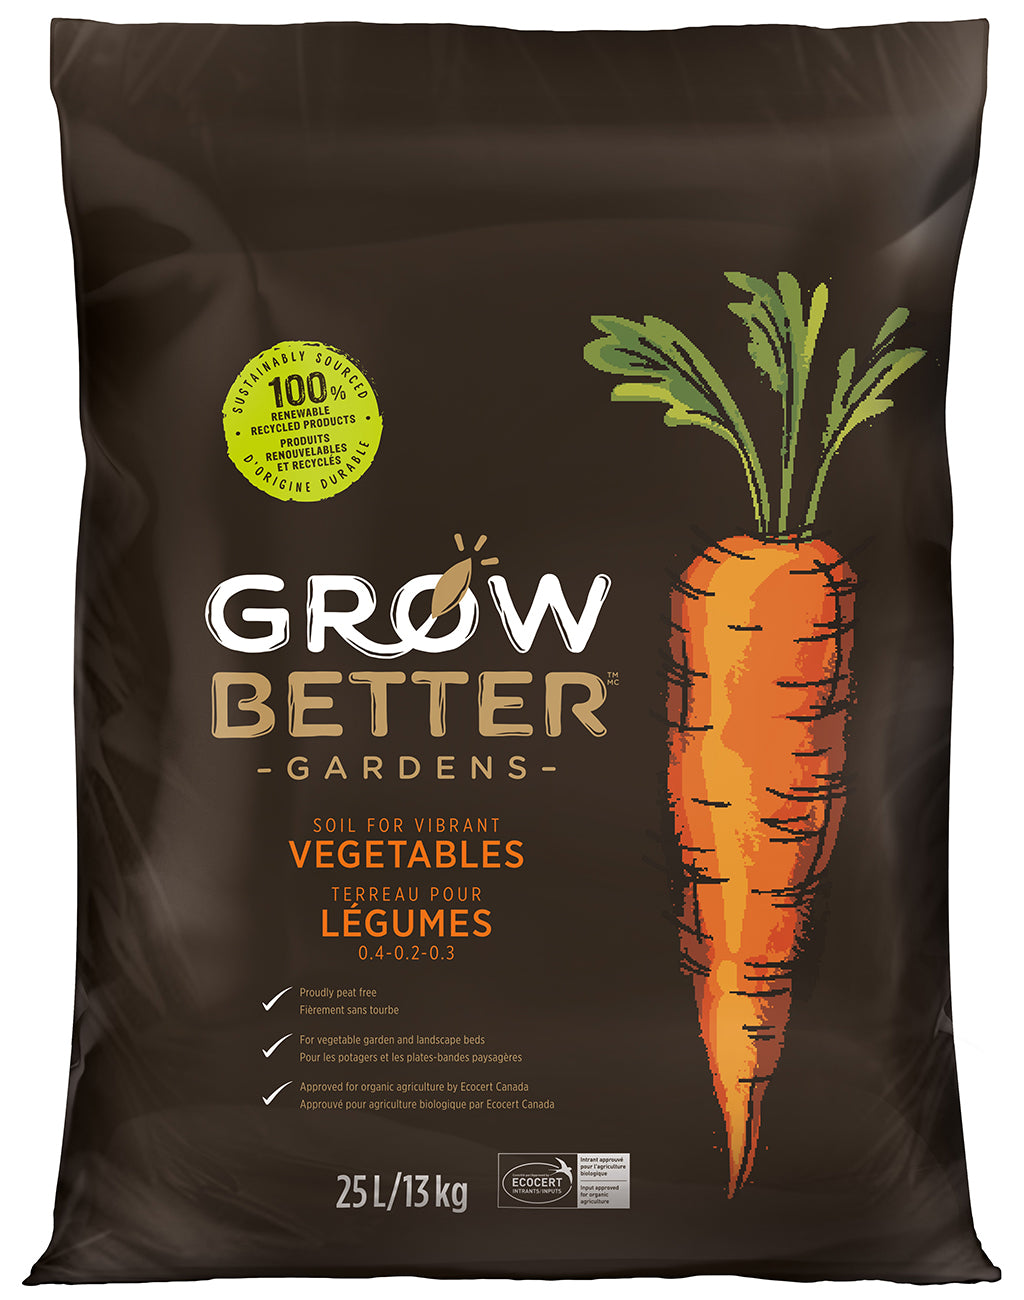 Soil for Vibrant Vegetables (25L)